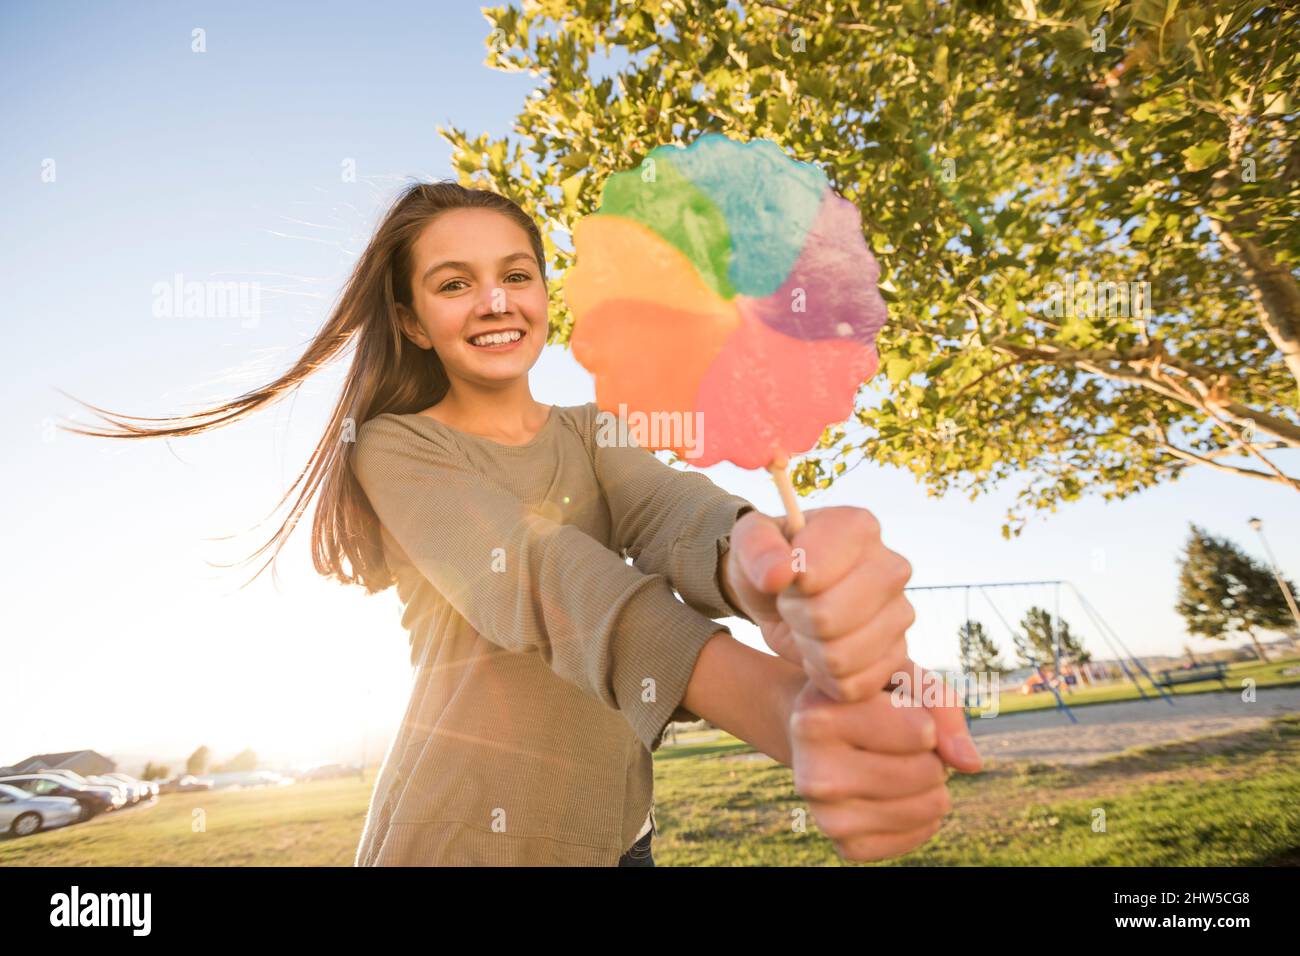 Ritratto di ragazza (12-13) con lollipop colorato nel parco Foto Stock